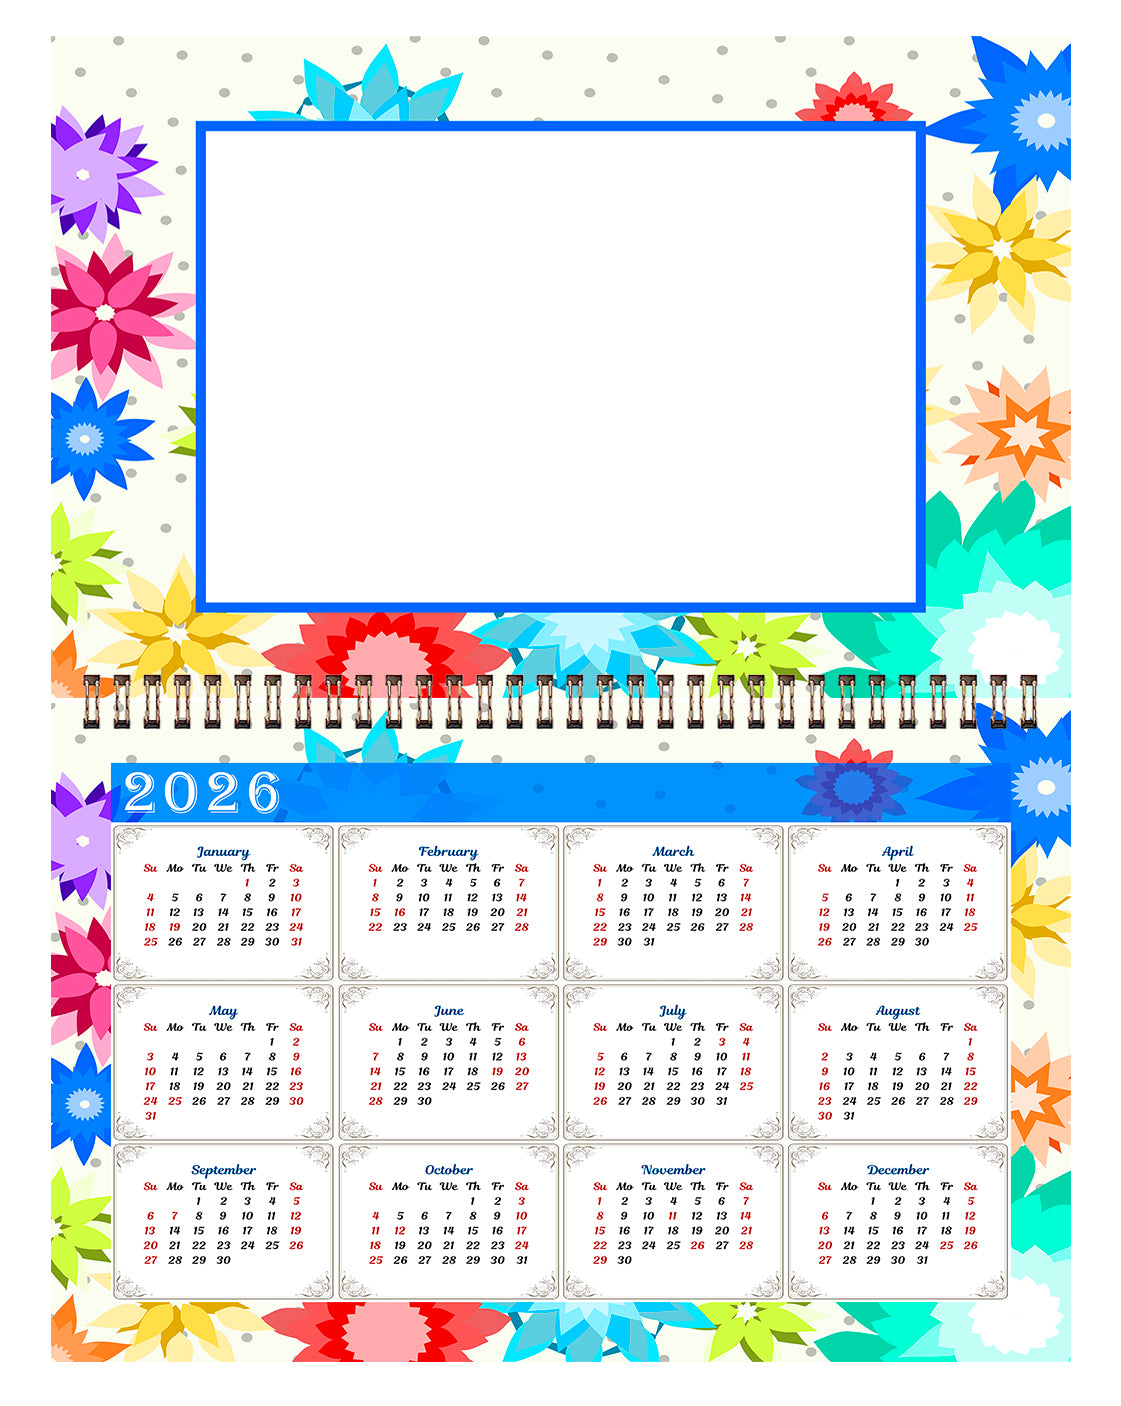 2025 Photo Frame Wall Spiral-Bound Calendar (Add Your Own Photos) - 12 Months Desktop/Wall Calendar/Planner - (Edition #01)